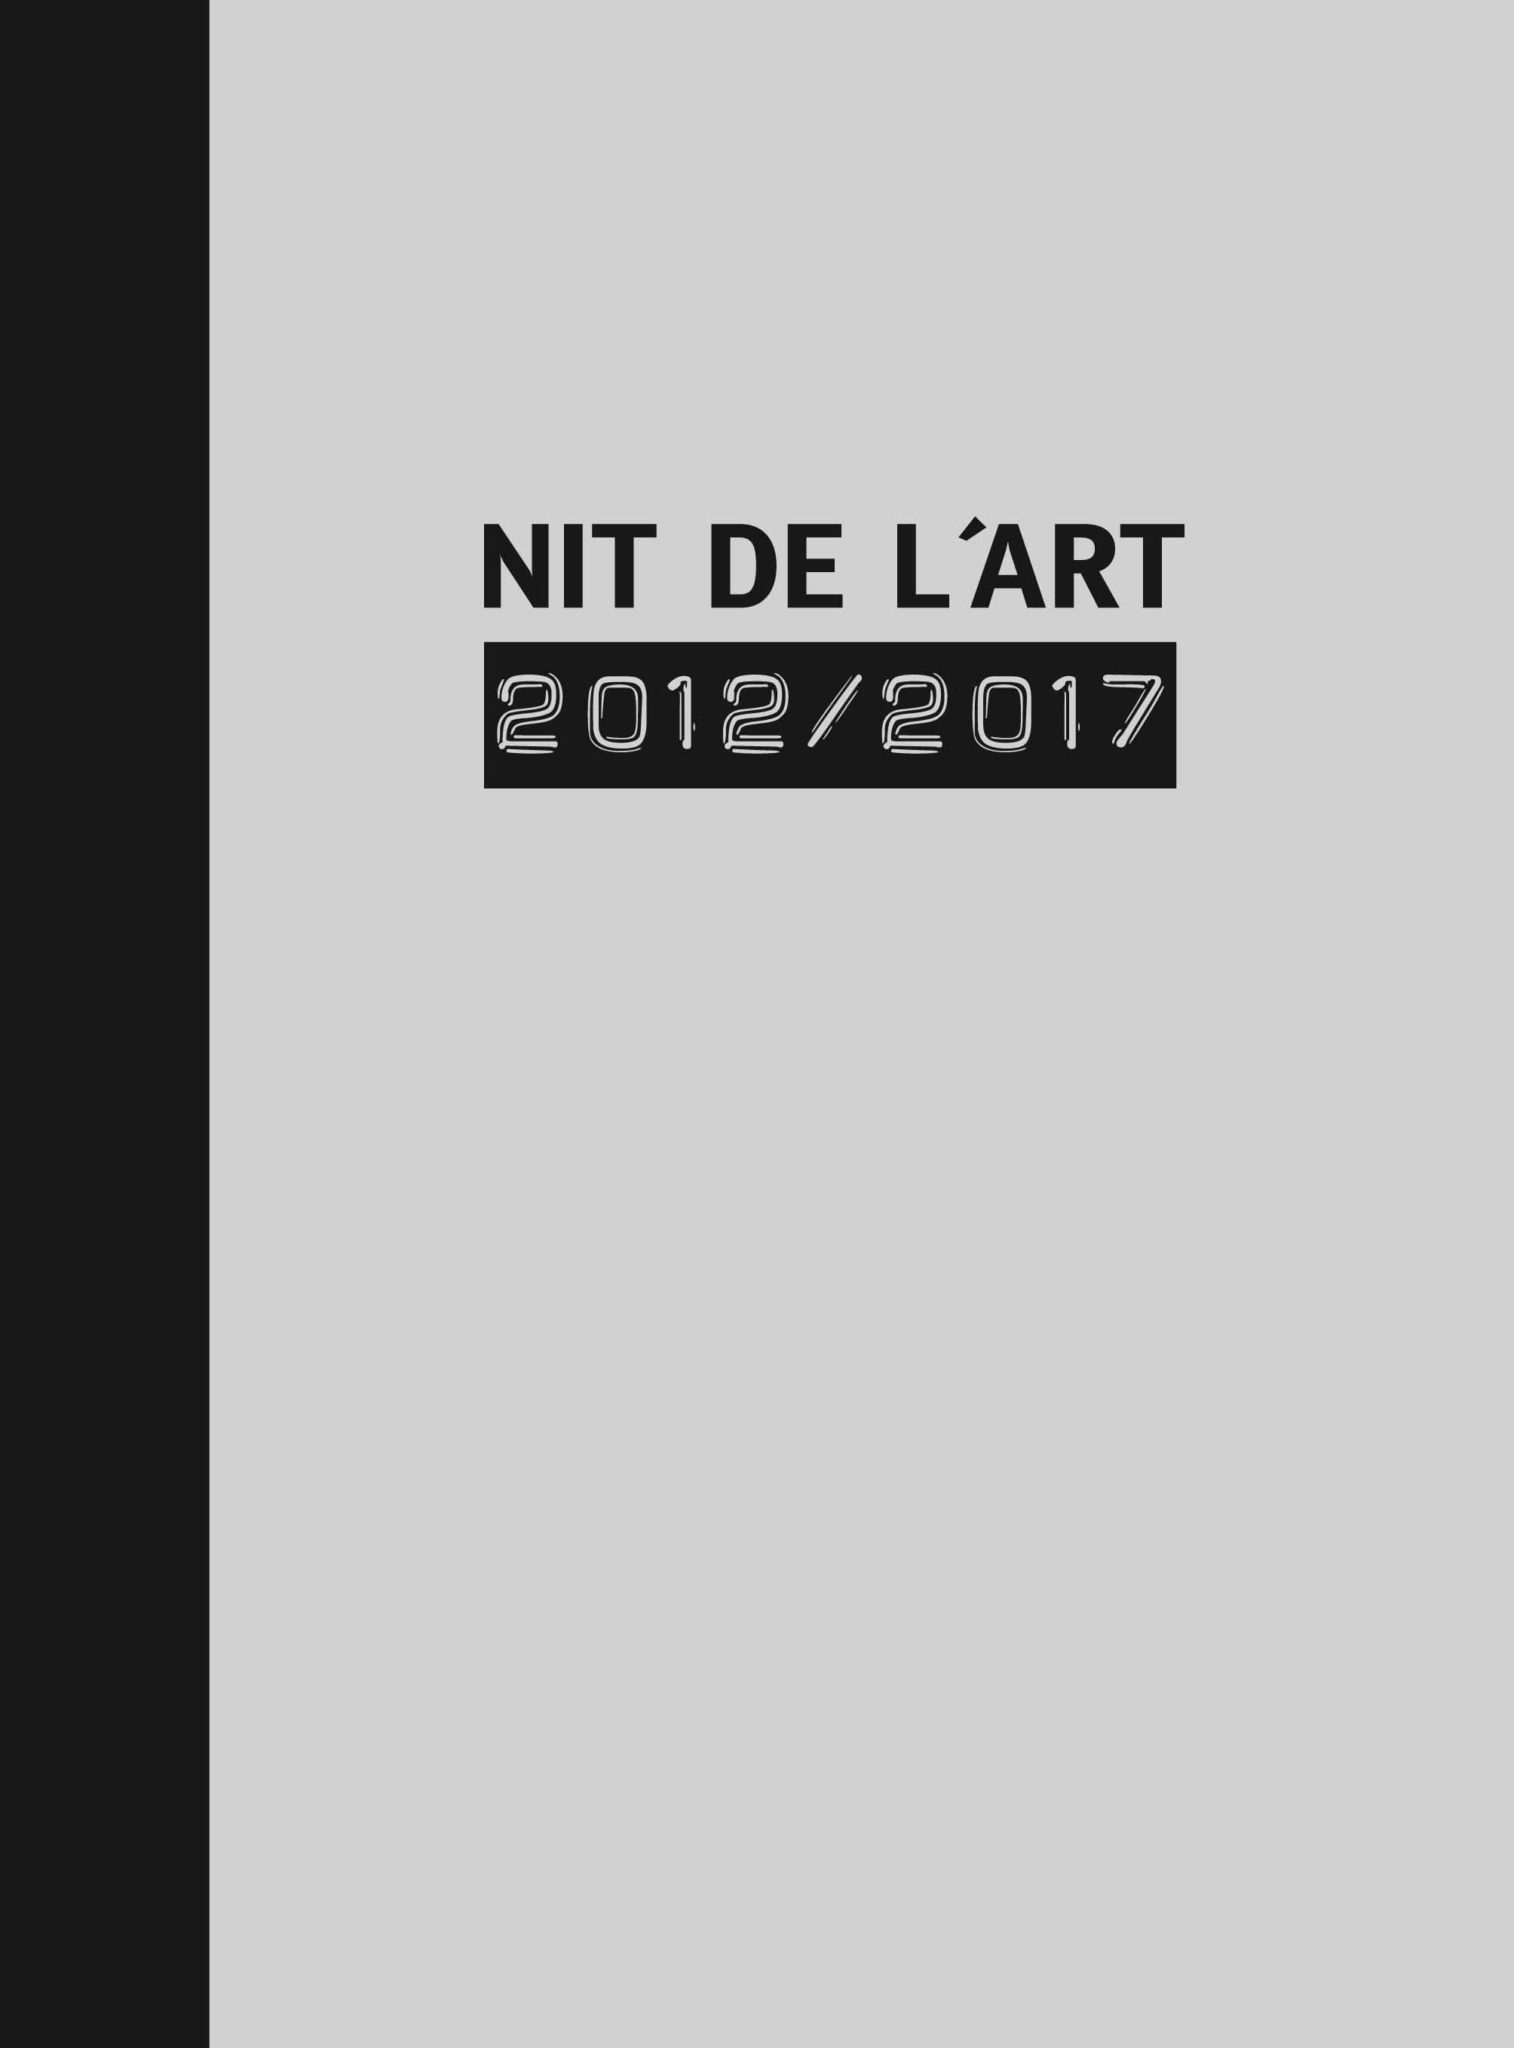 Nit de l'Art 2012/2017